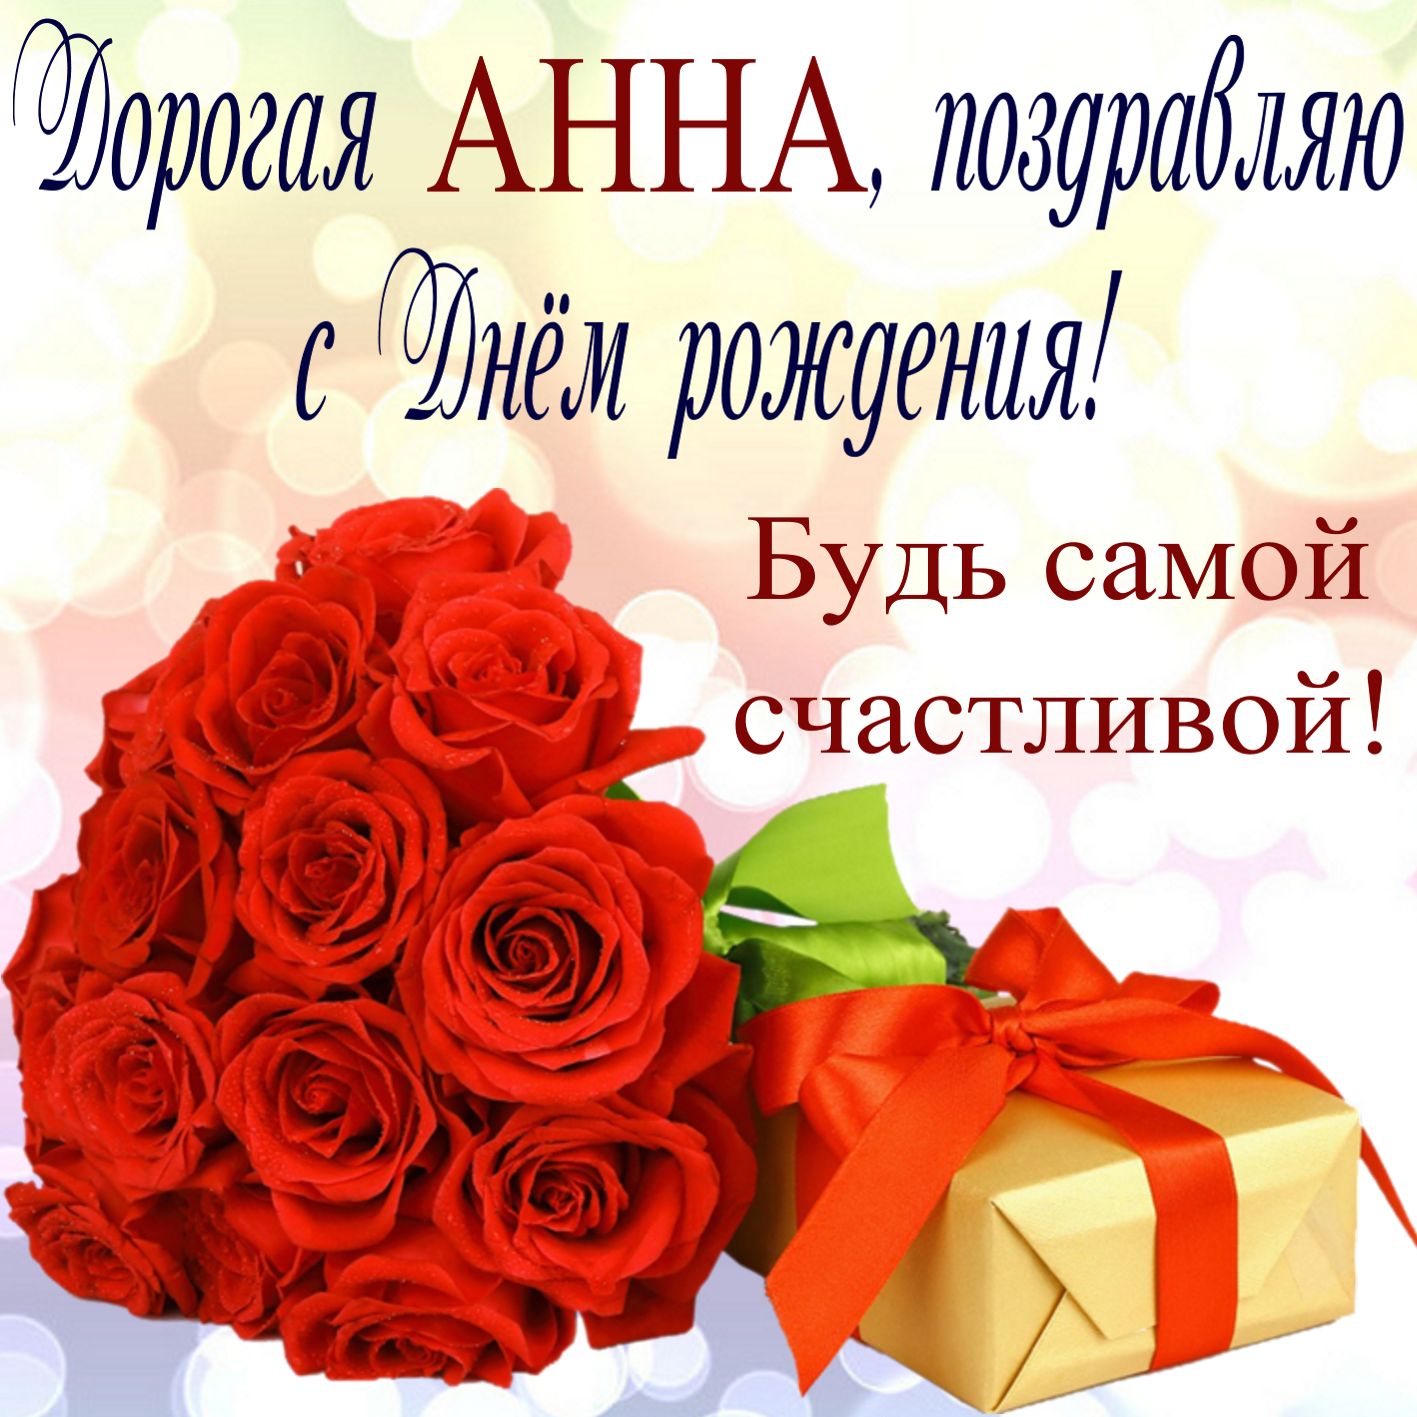 Поздравление, подарок и цветы для Анны